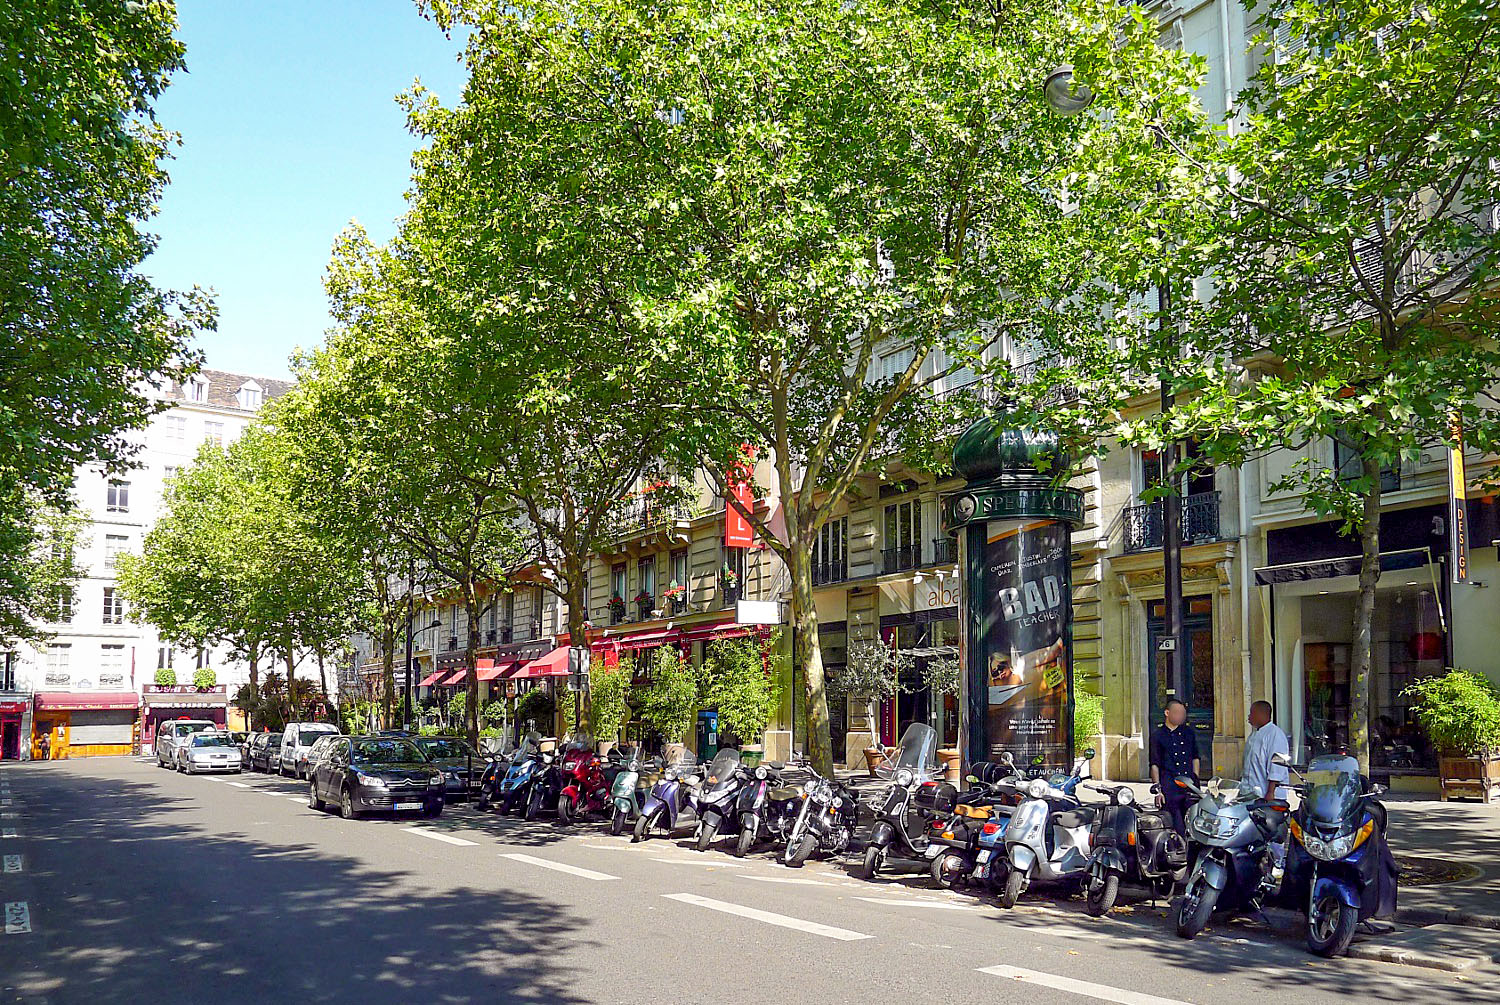 Lieux anglais à Paris - Avenue Victoria Paris © Mbzt - licence [CC BY 3.0] from Wikimedia Commons